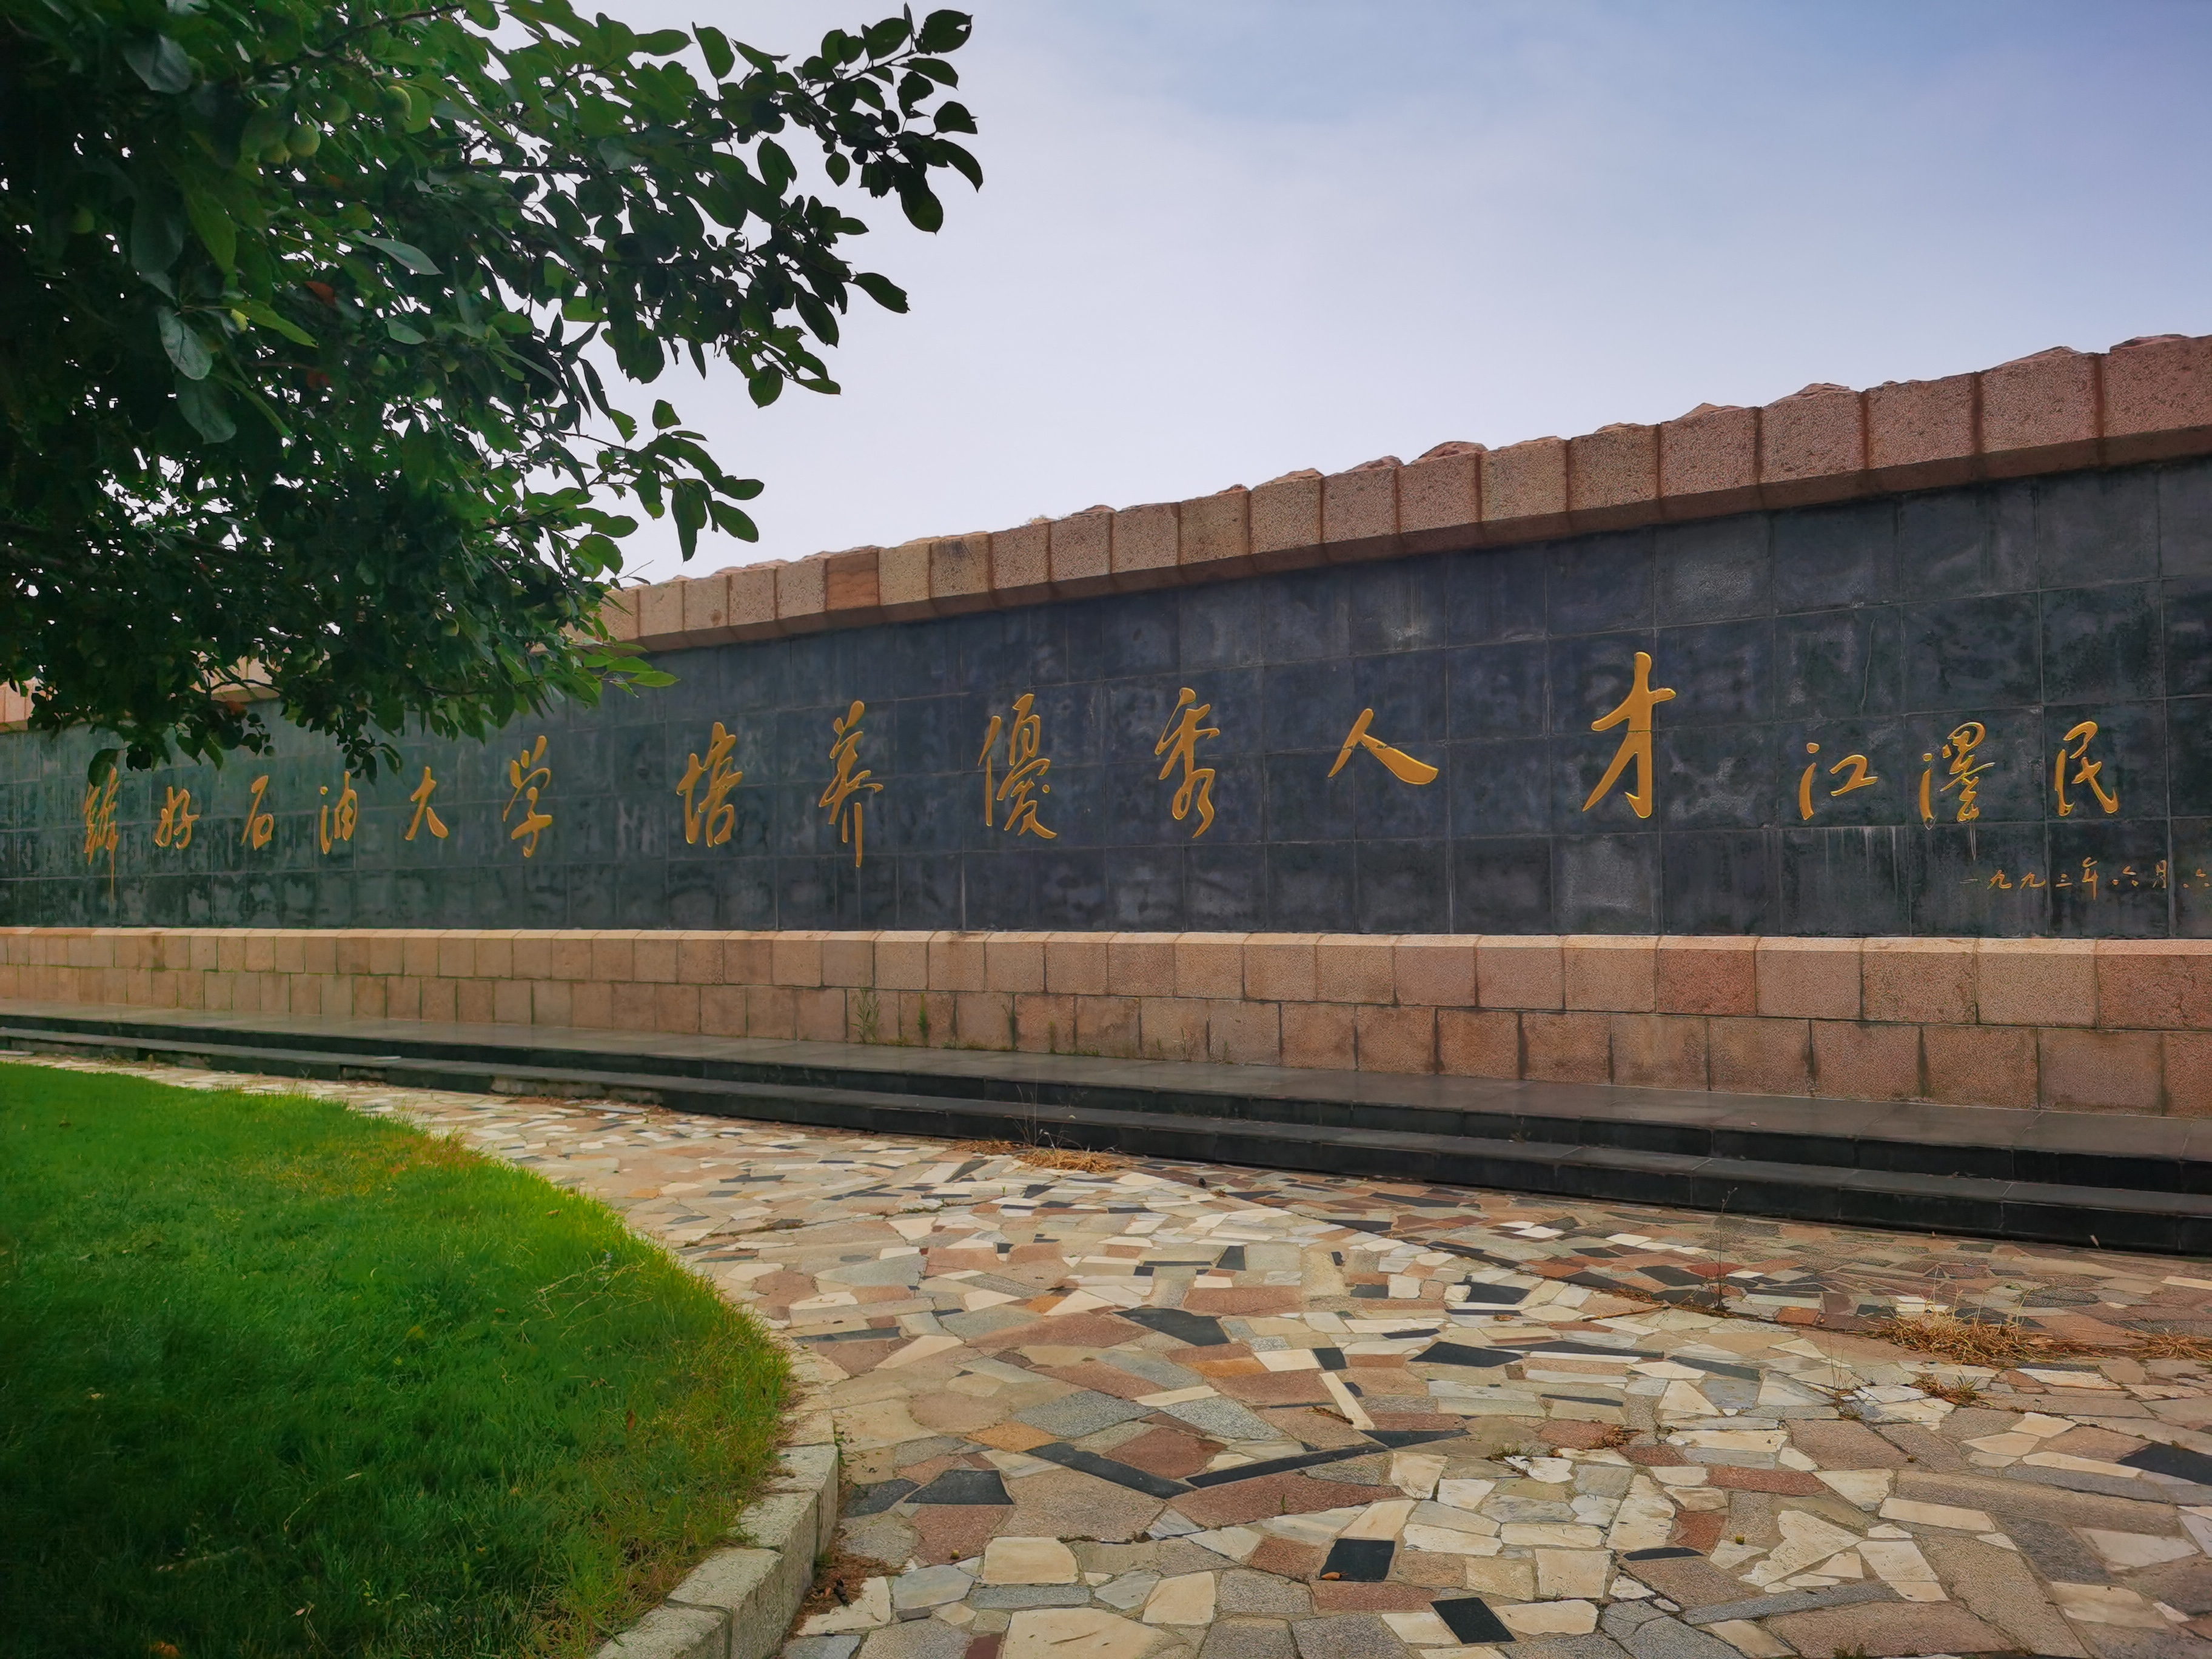 校企联合定制培养是中国石油大学(华东)教育发展中心主办的面向新兴